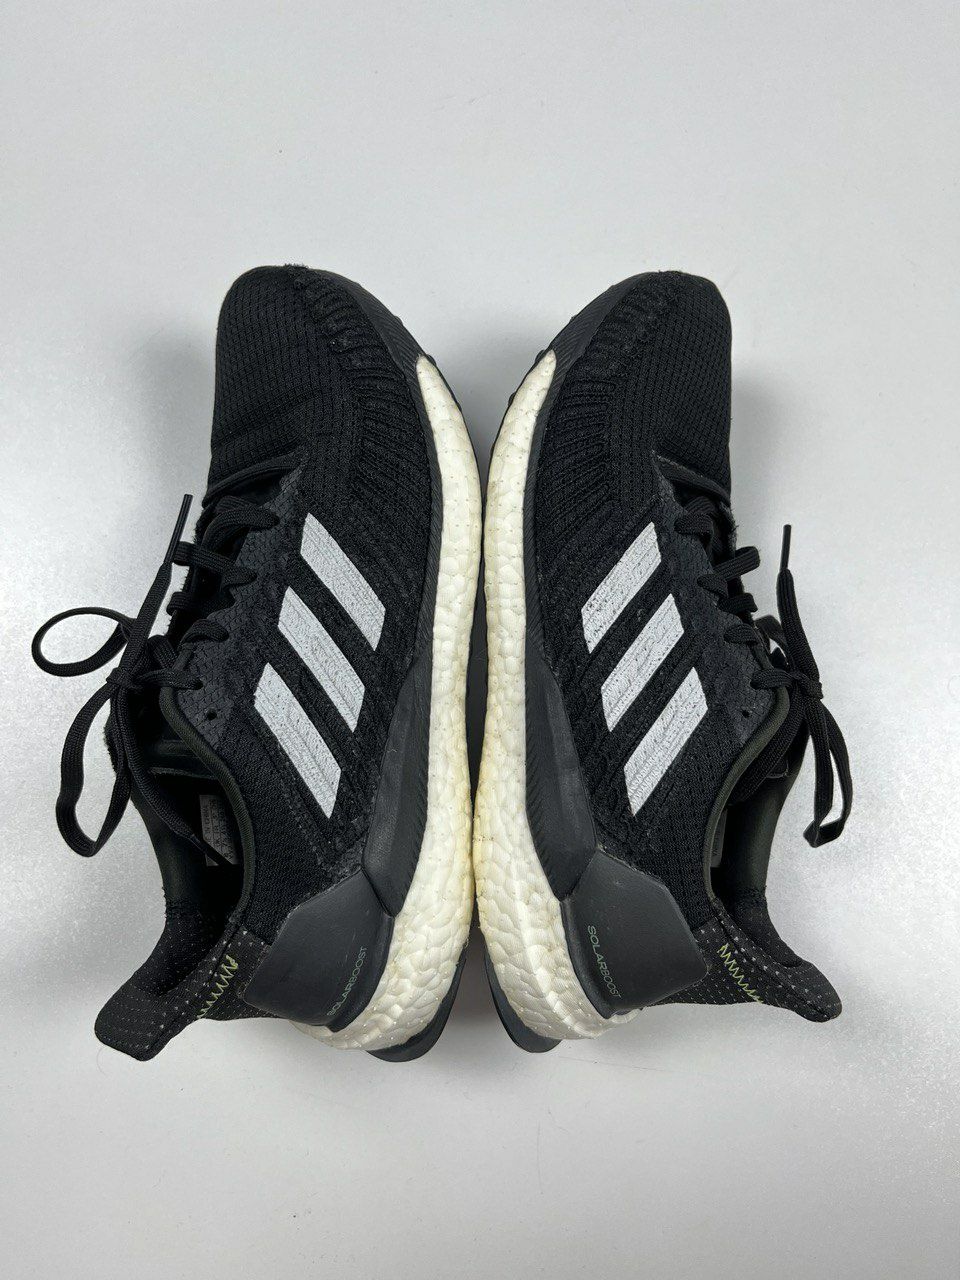 Adidas Solar Boost 19 оригинальные кроссовки размер 41